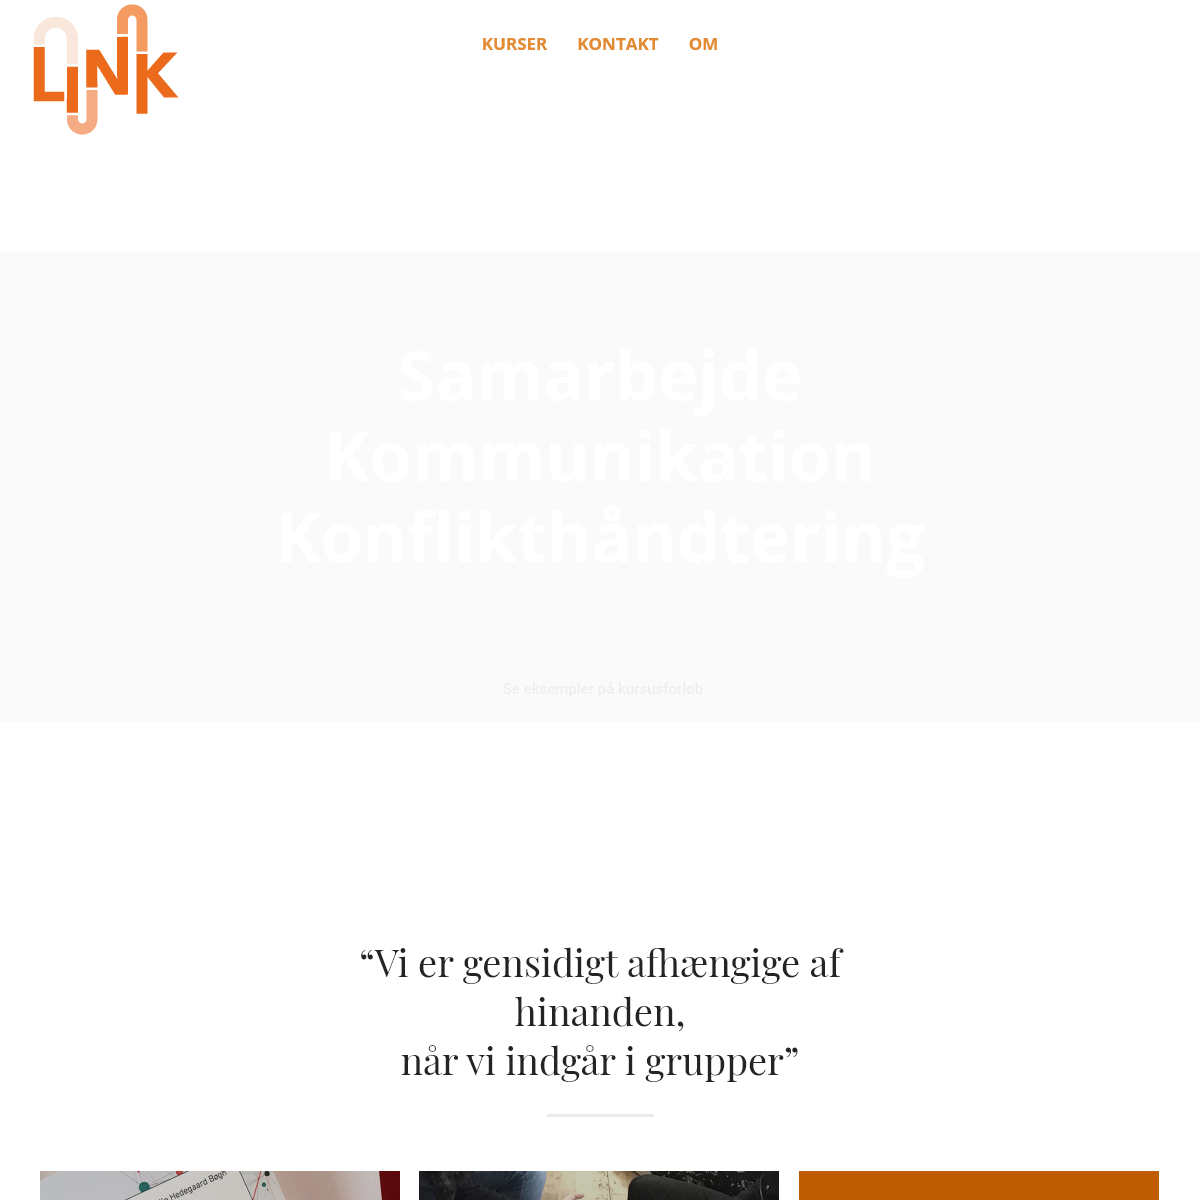 A complete backup of link-kommunikation.dk